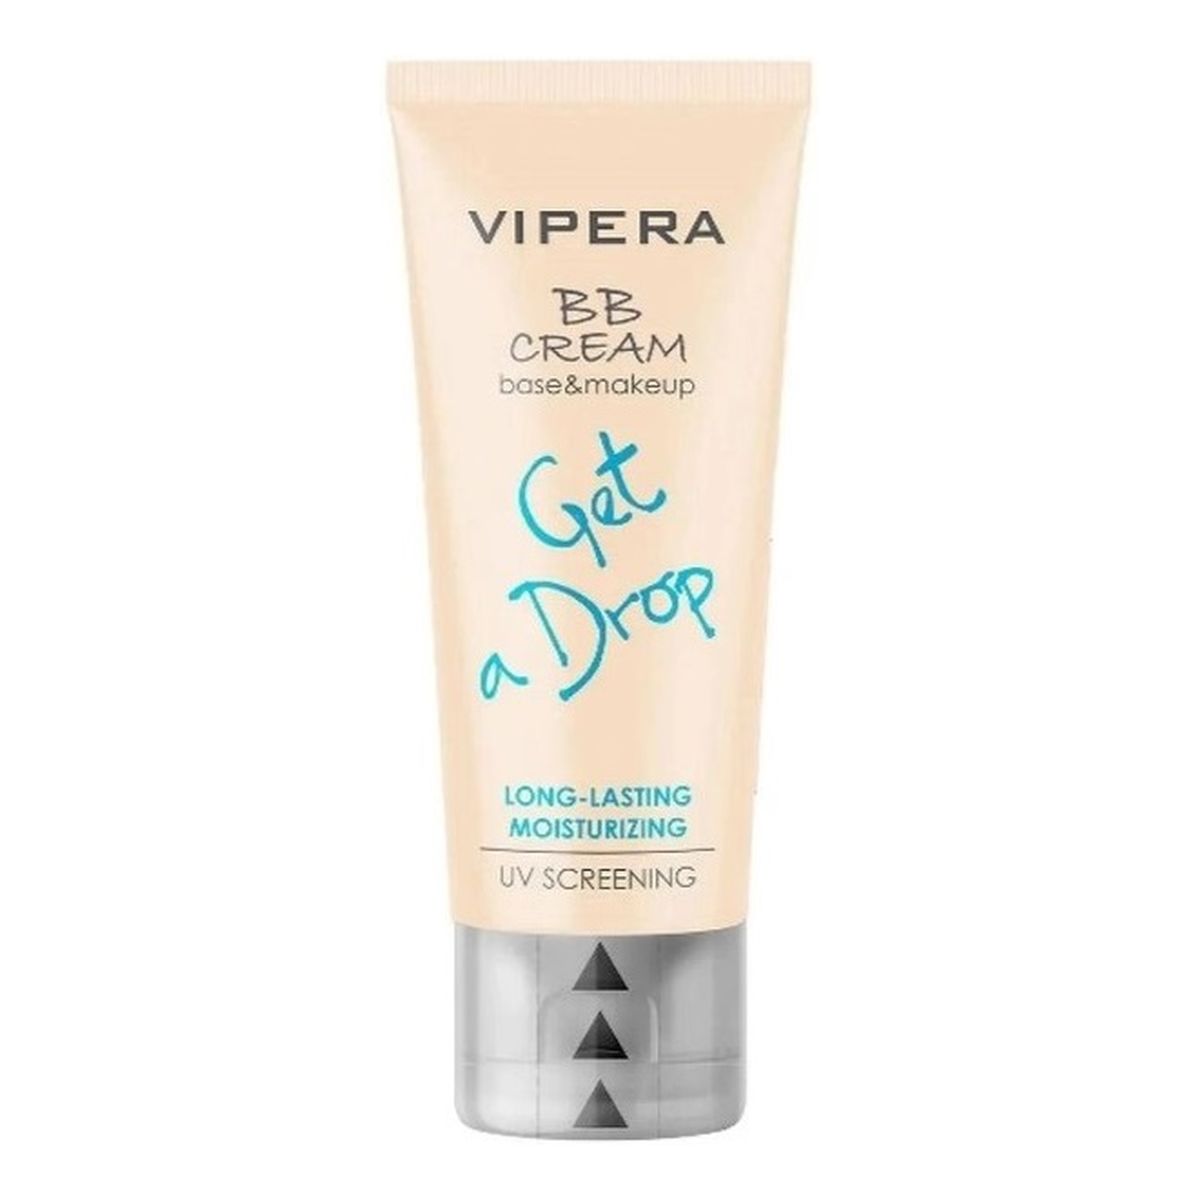 Vipera BB Cream Get A Drop nawilżający Krem bb z filtrem uv 06 35ml